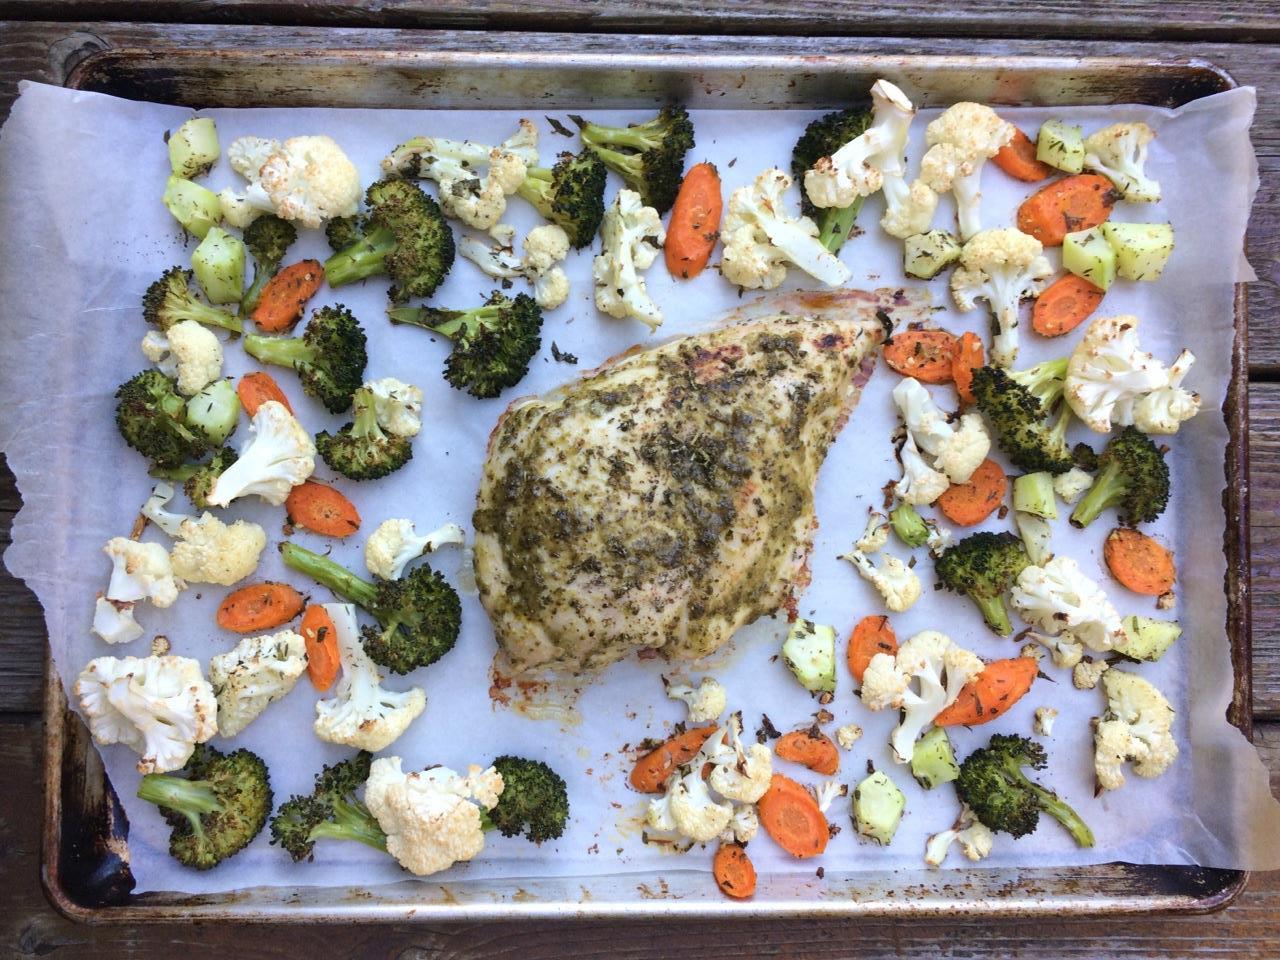 Sheet Pan Roasted Turkey and Veggies